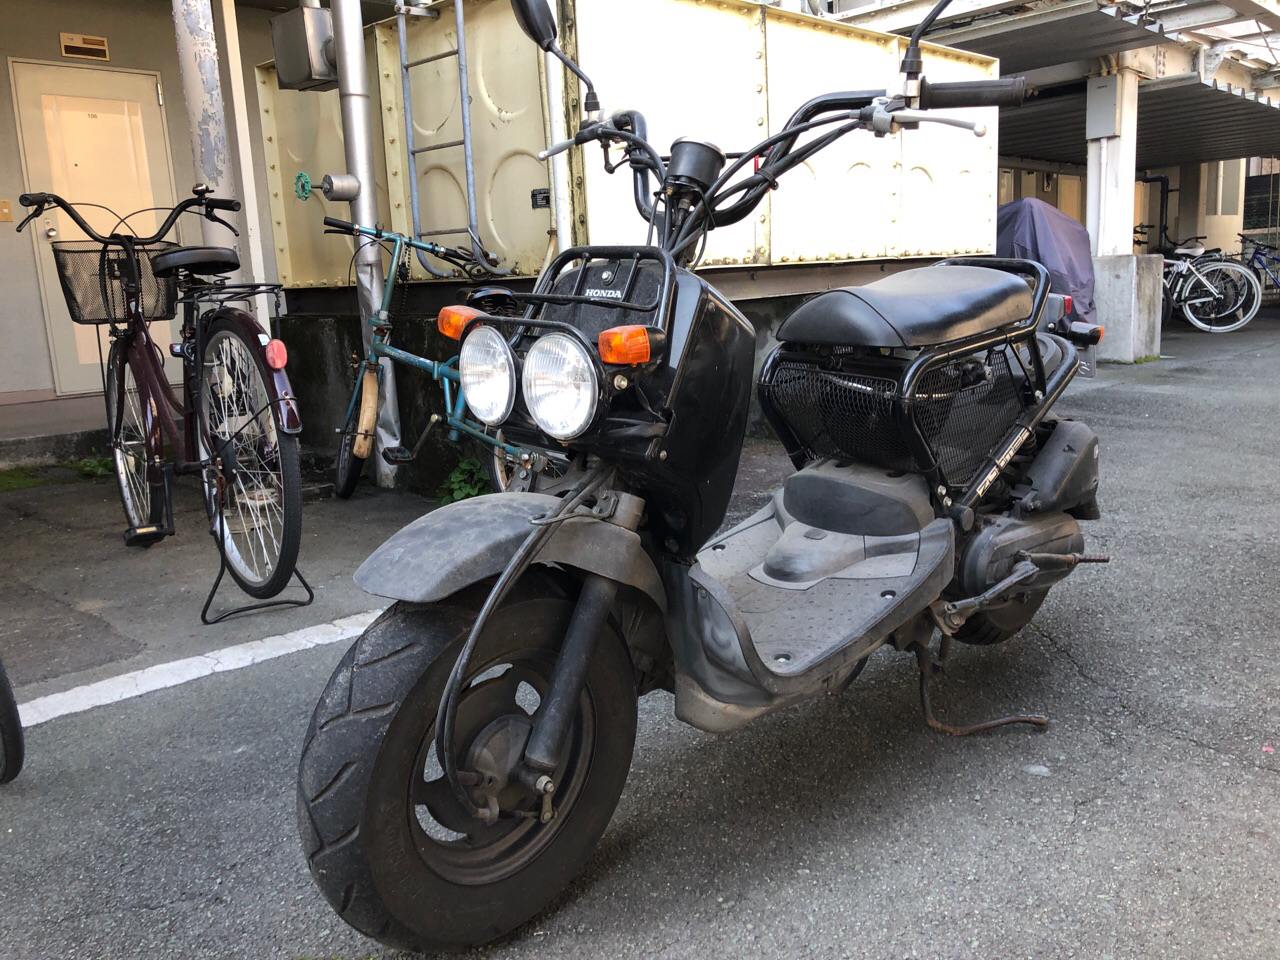 熊本市中央区渡鹿6丁目b様 原付50ccスクーター買取 ズーマー Af58型 熊本のバイク スクーター 原付の買取 処分専門 みのまるバイク